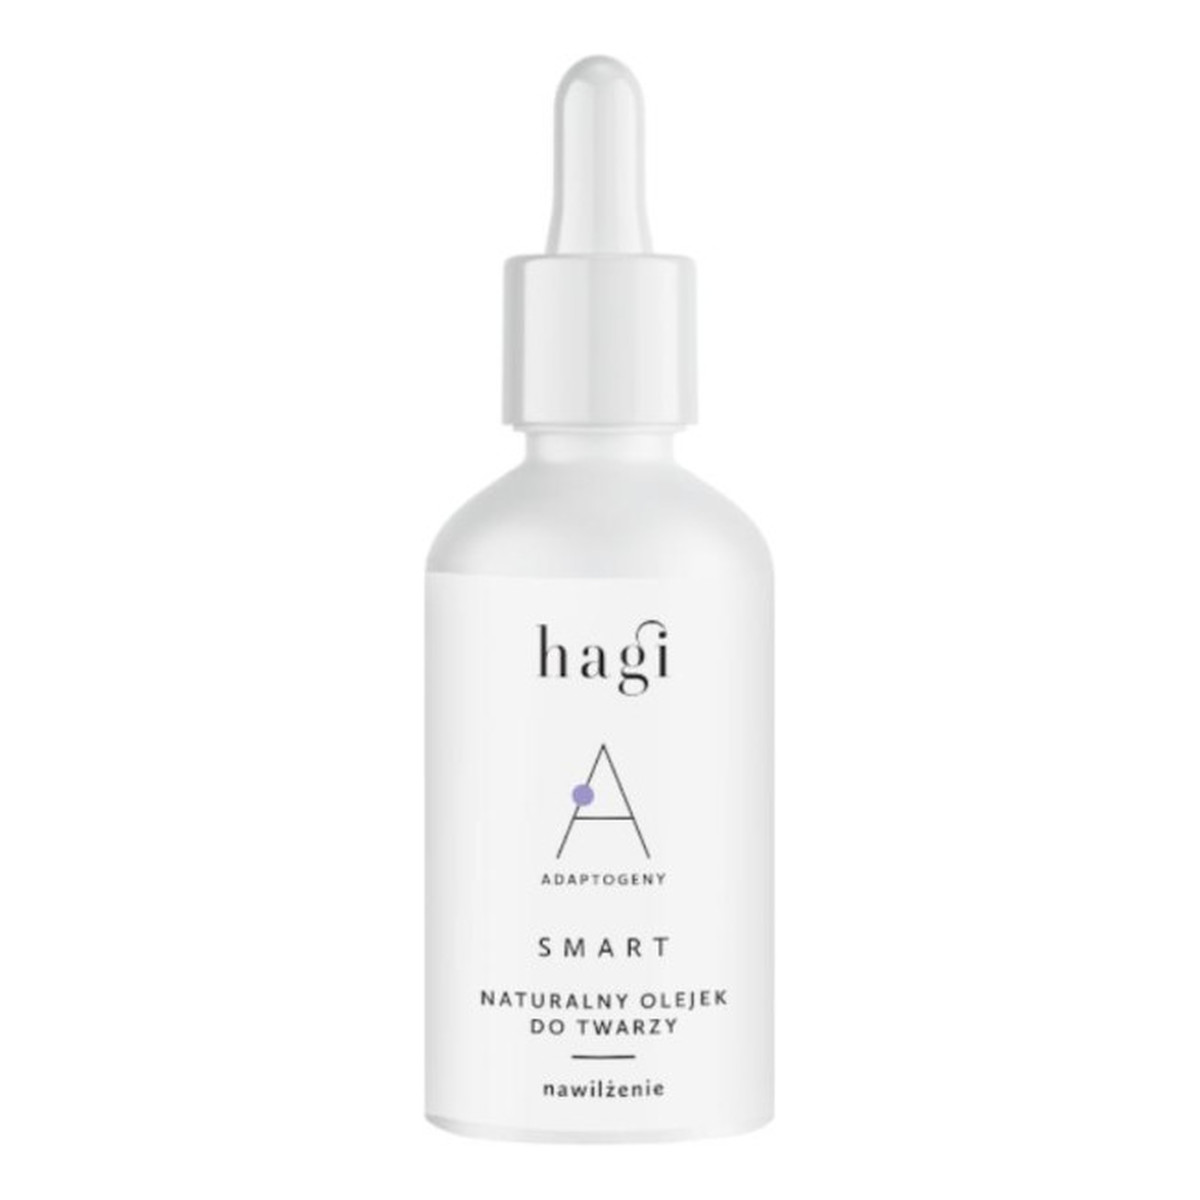 Hagi Smart A Naturalny olejek do twarzy nawilżający z adaptogenami 30ml